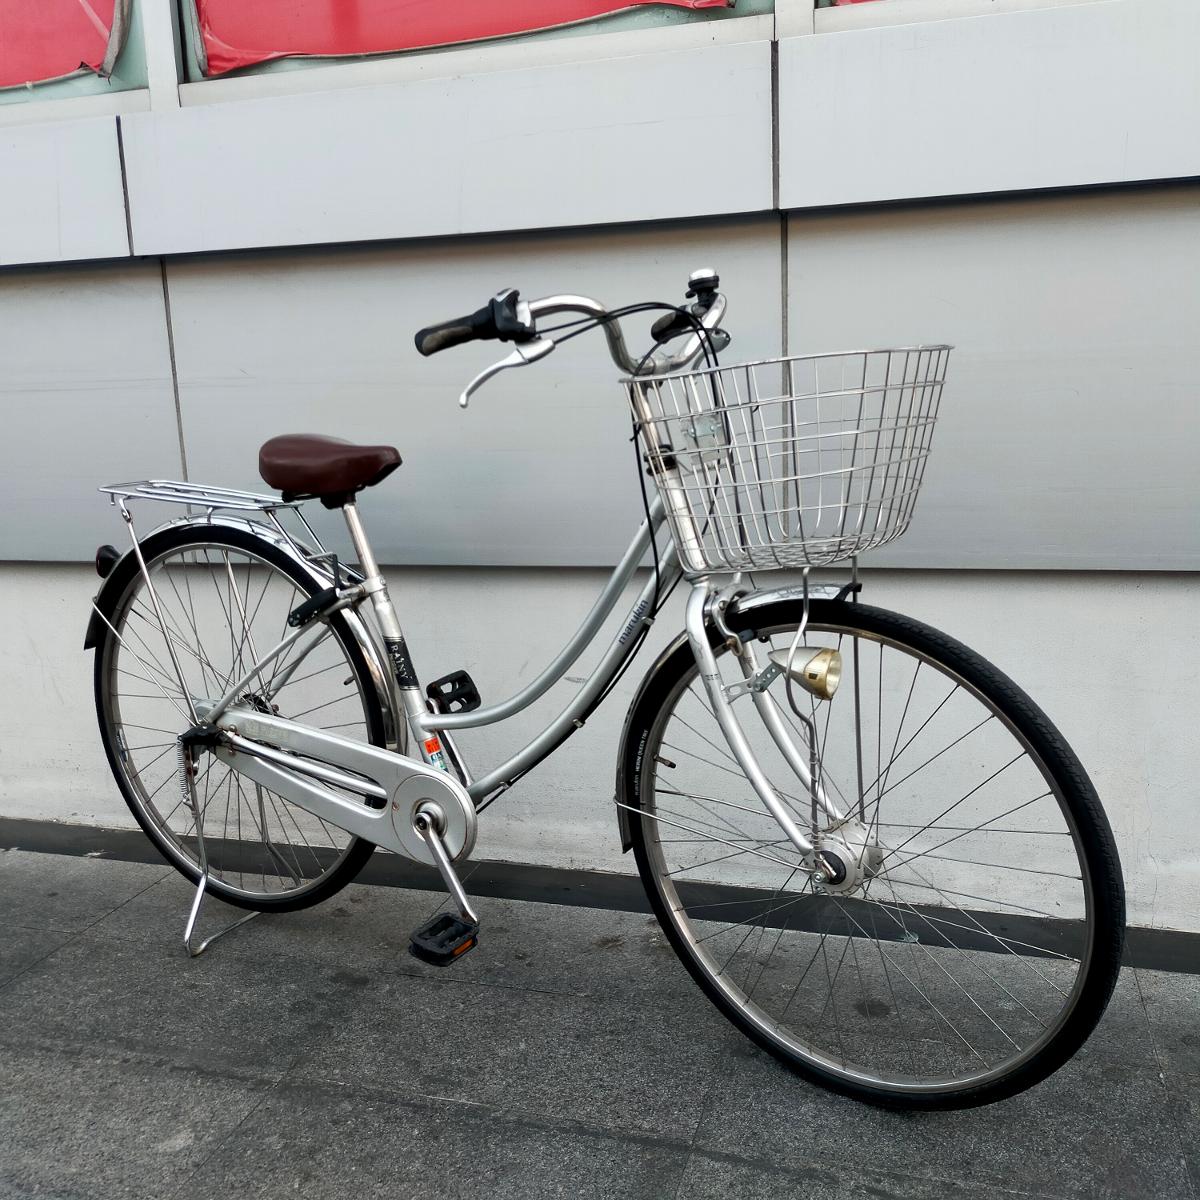 จักรยานแม่บ้านญี่ปุ่น คุณภาพสูง Maruikin เฟรมเหล็กคุณภาพสูง แบบท่อสวมไร้รอยเชื่อม เกียร์ดุมชิมาโน Ne